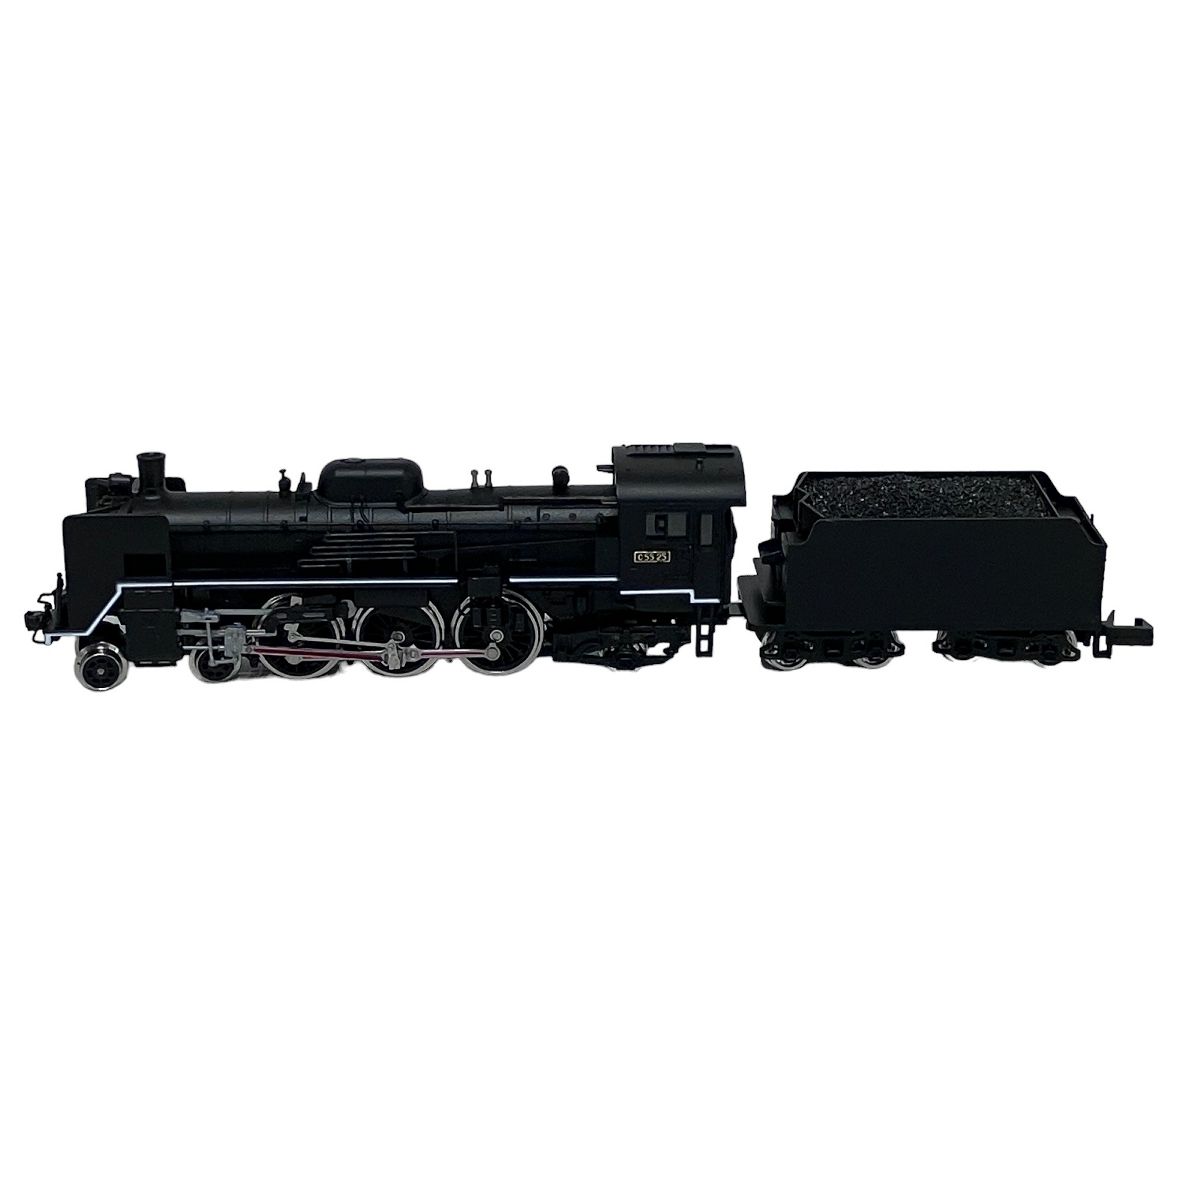 MICROACE A7102 C55-25 2次形改造 蒸気機関車 Nゲージ 鉄道模型 F8973016 - メルカリ